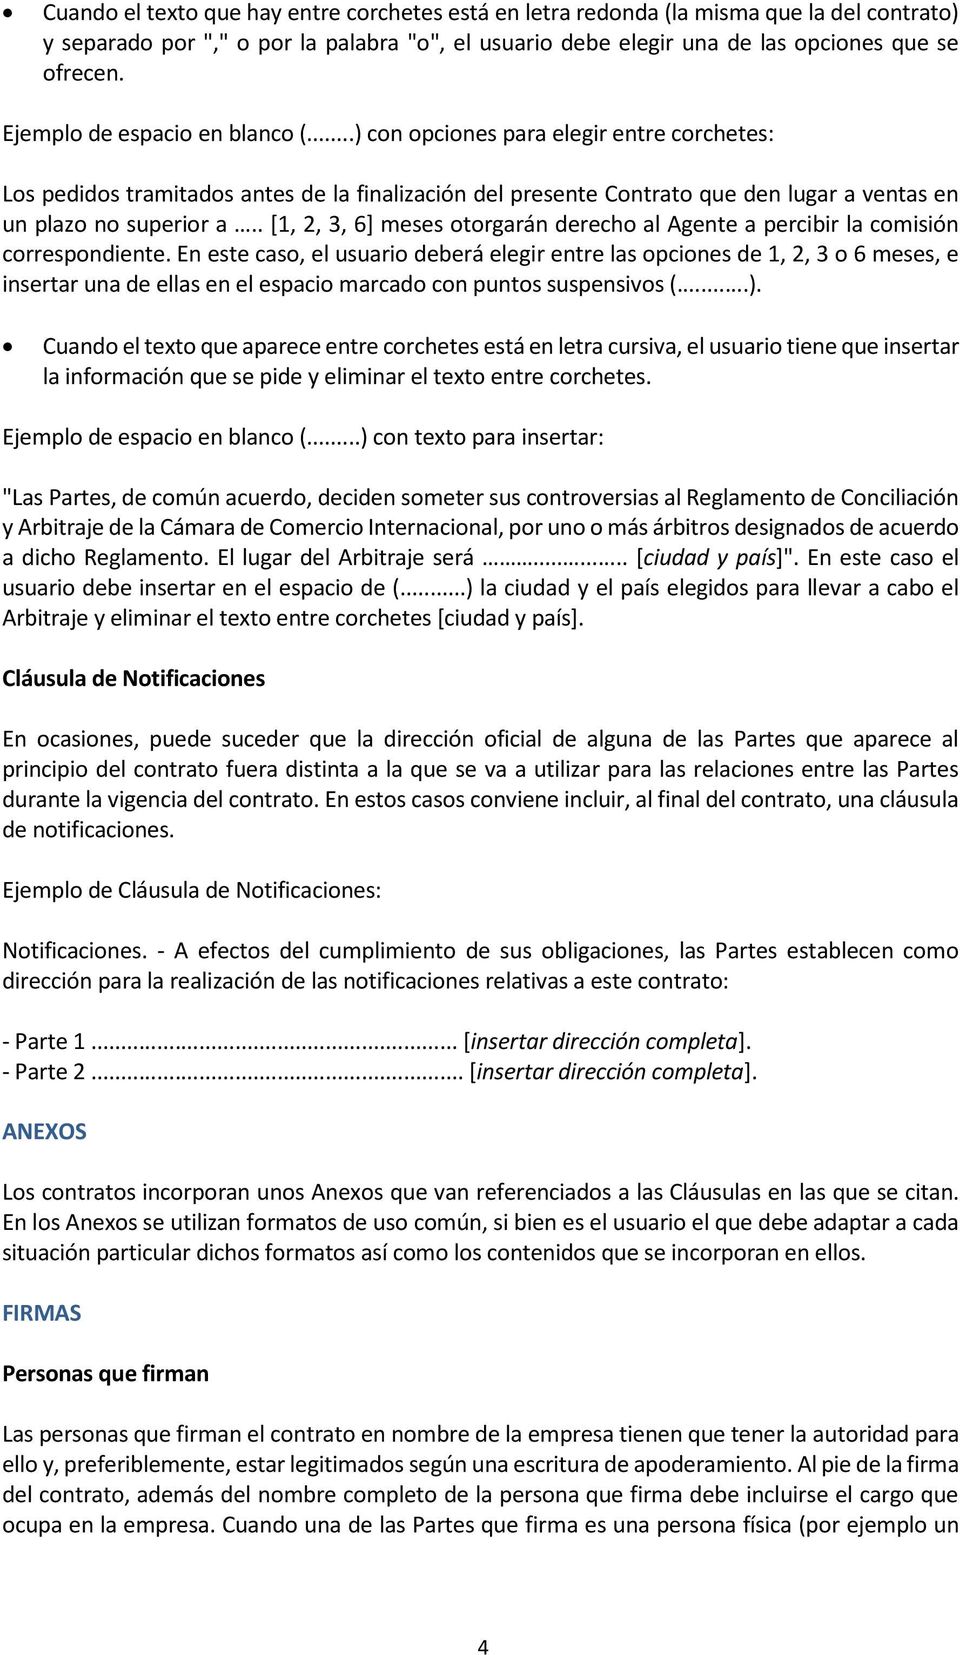 MODELO DE CONTRATO DE COMISIÓN MERCANTIL INTERNACIONAL - PDF Free Download